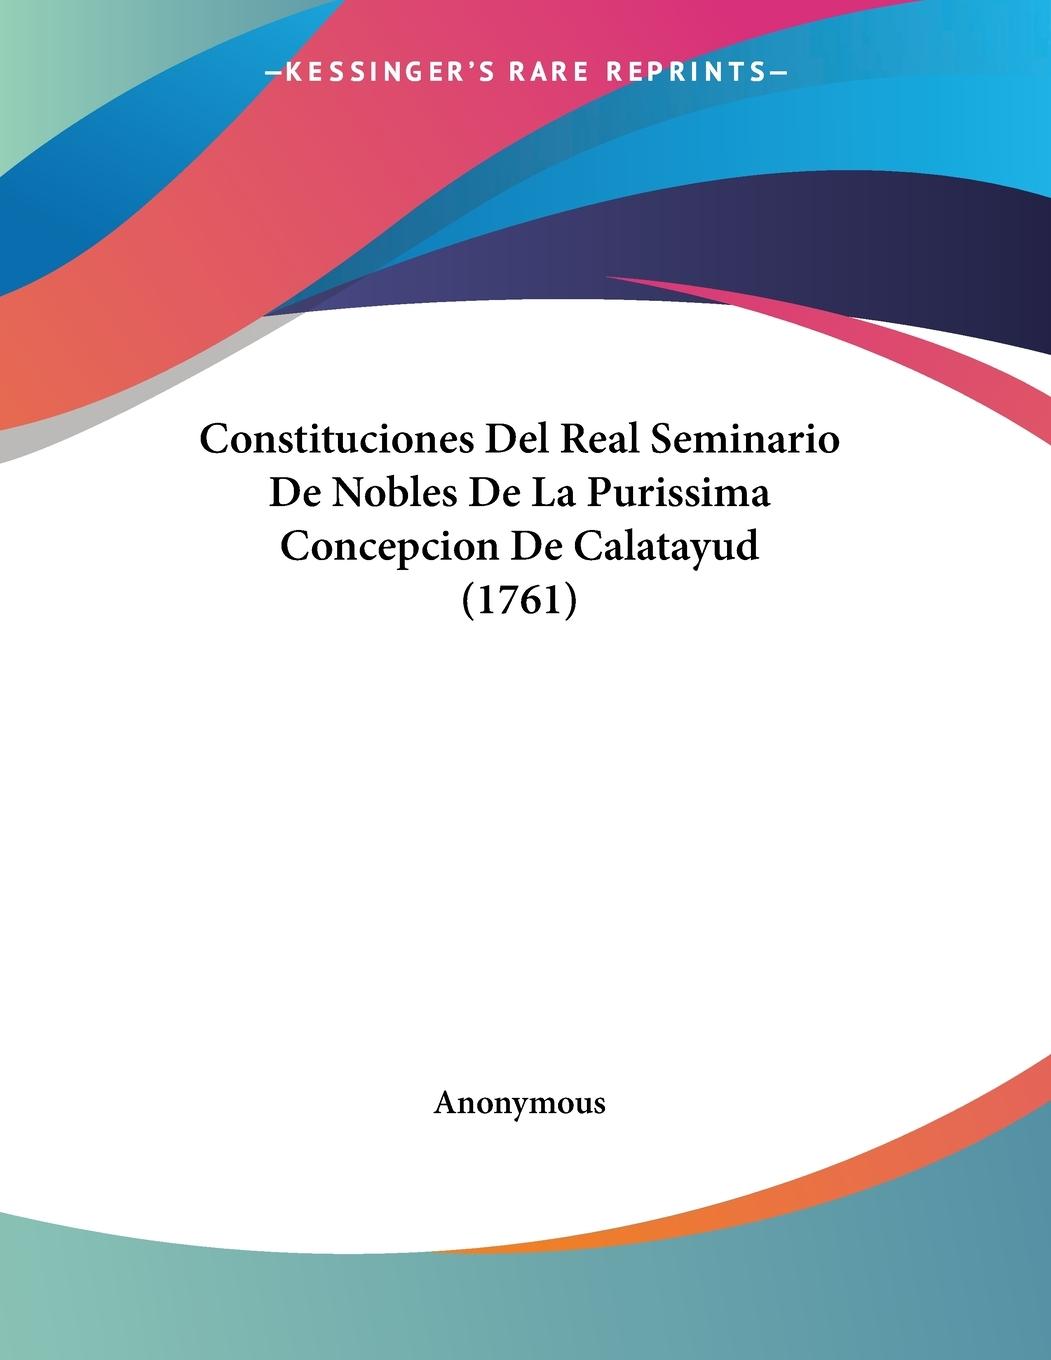 Constituciones Del Real Seminario De Nobles De La Purissima Concepcion De Calatayud (1761) - Anonymous